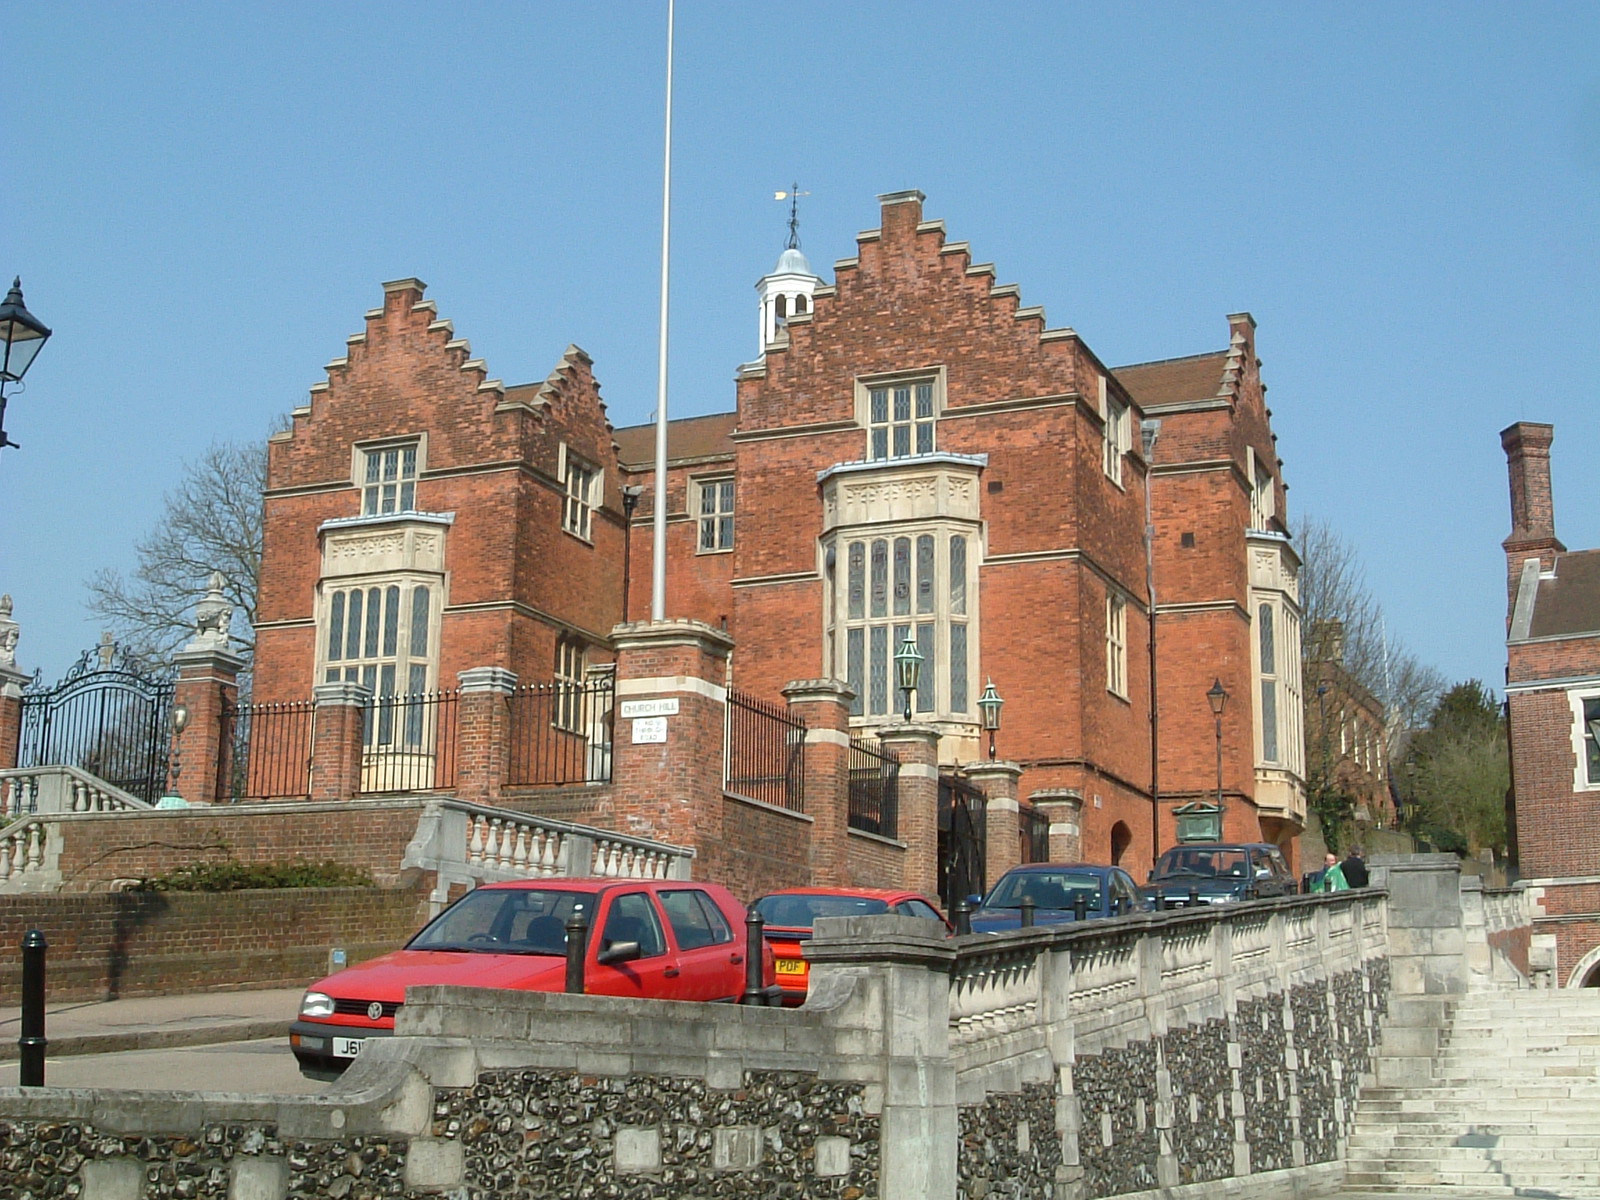 The original school building, Harrow School